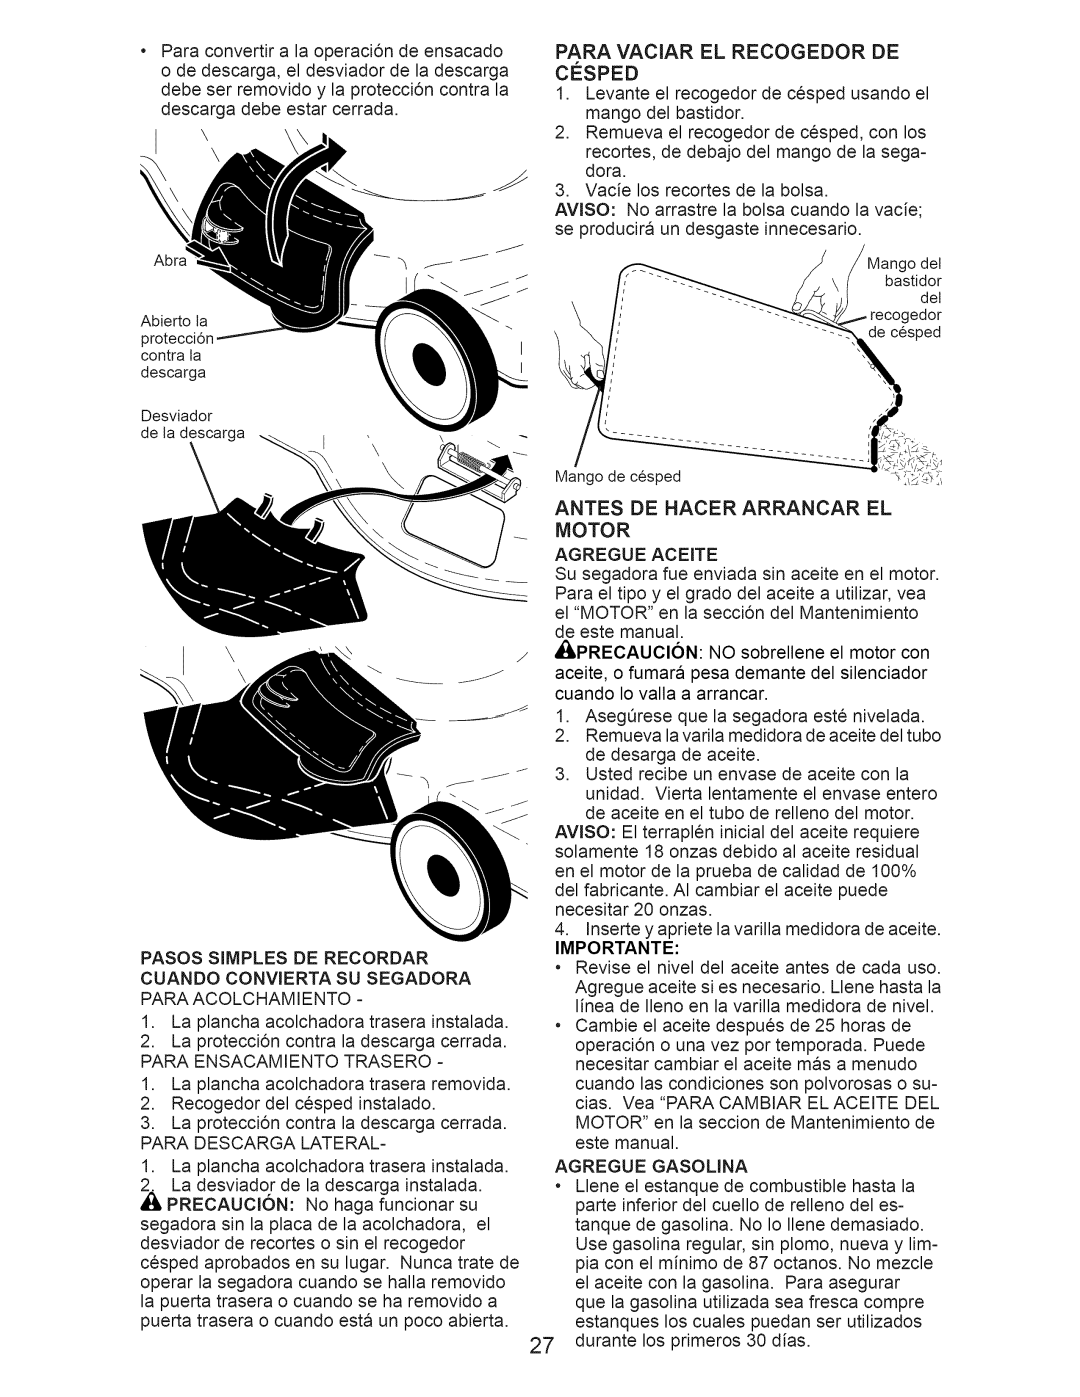 Craftsman 917.376230 manual Paraconvertira la operaci6ndeensacado, Antes De Hacer Arrancar El Motor 